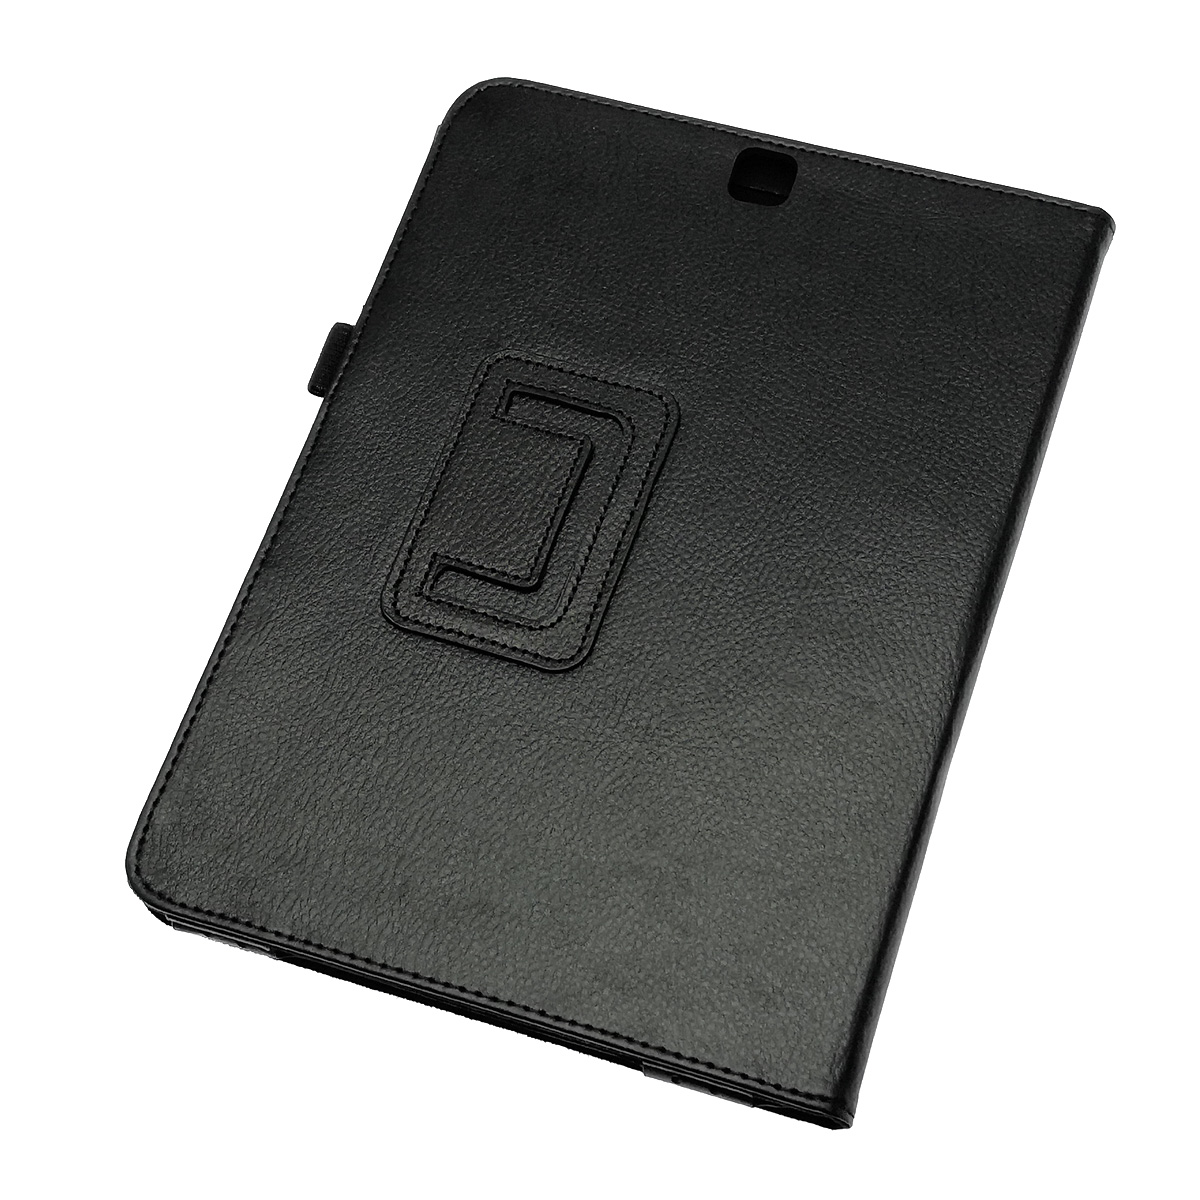 Чехол книжка для SAMSUNG Galaxy Tab S2 9.7 (SM-T810, T813, T815, T819), экокожа, цвет черный.